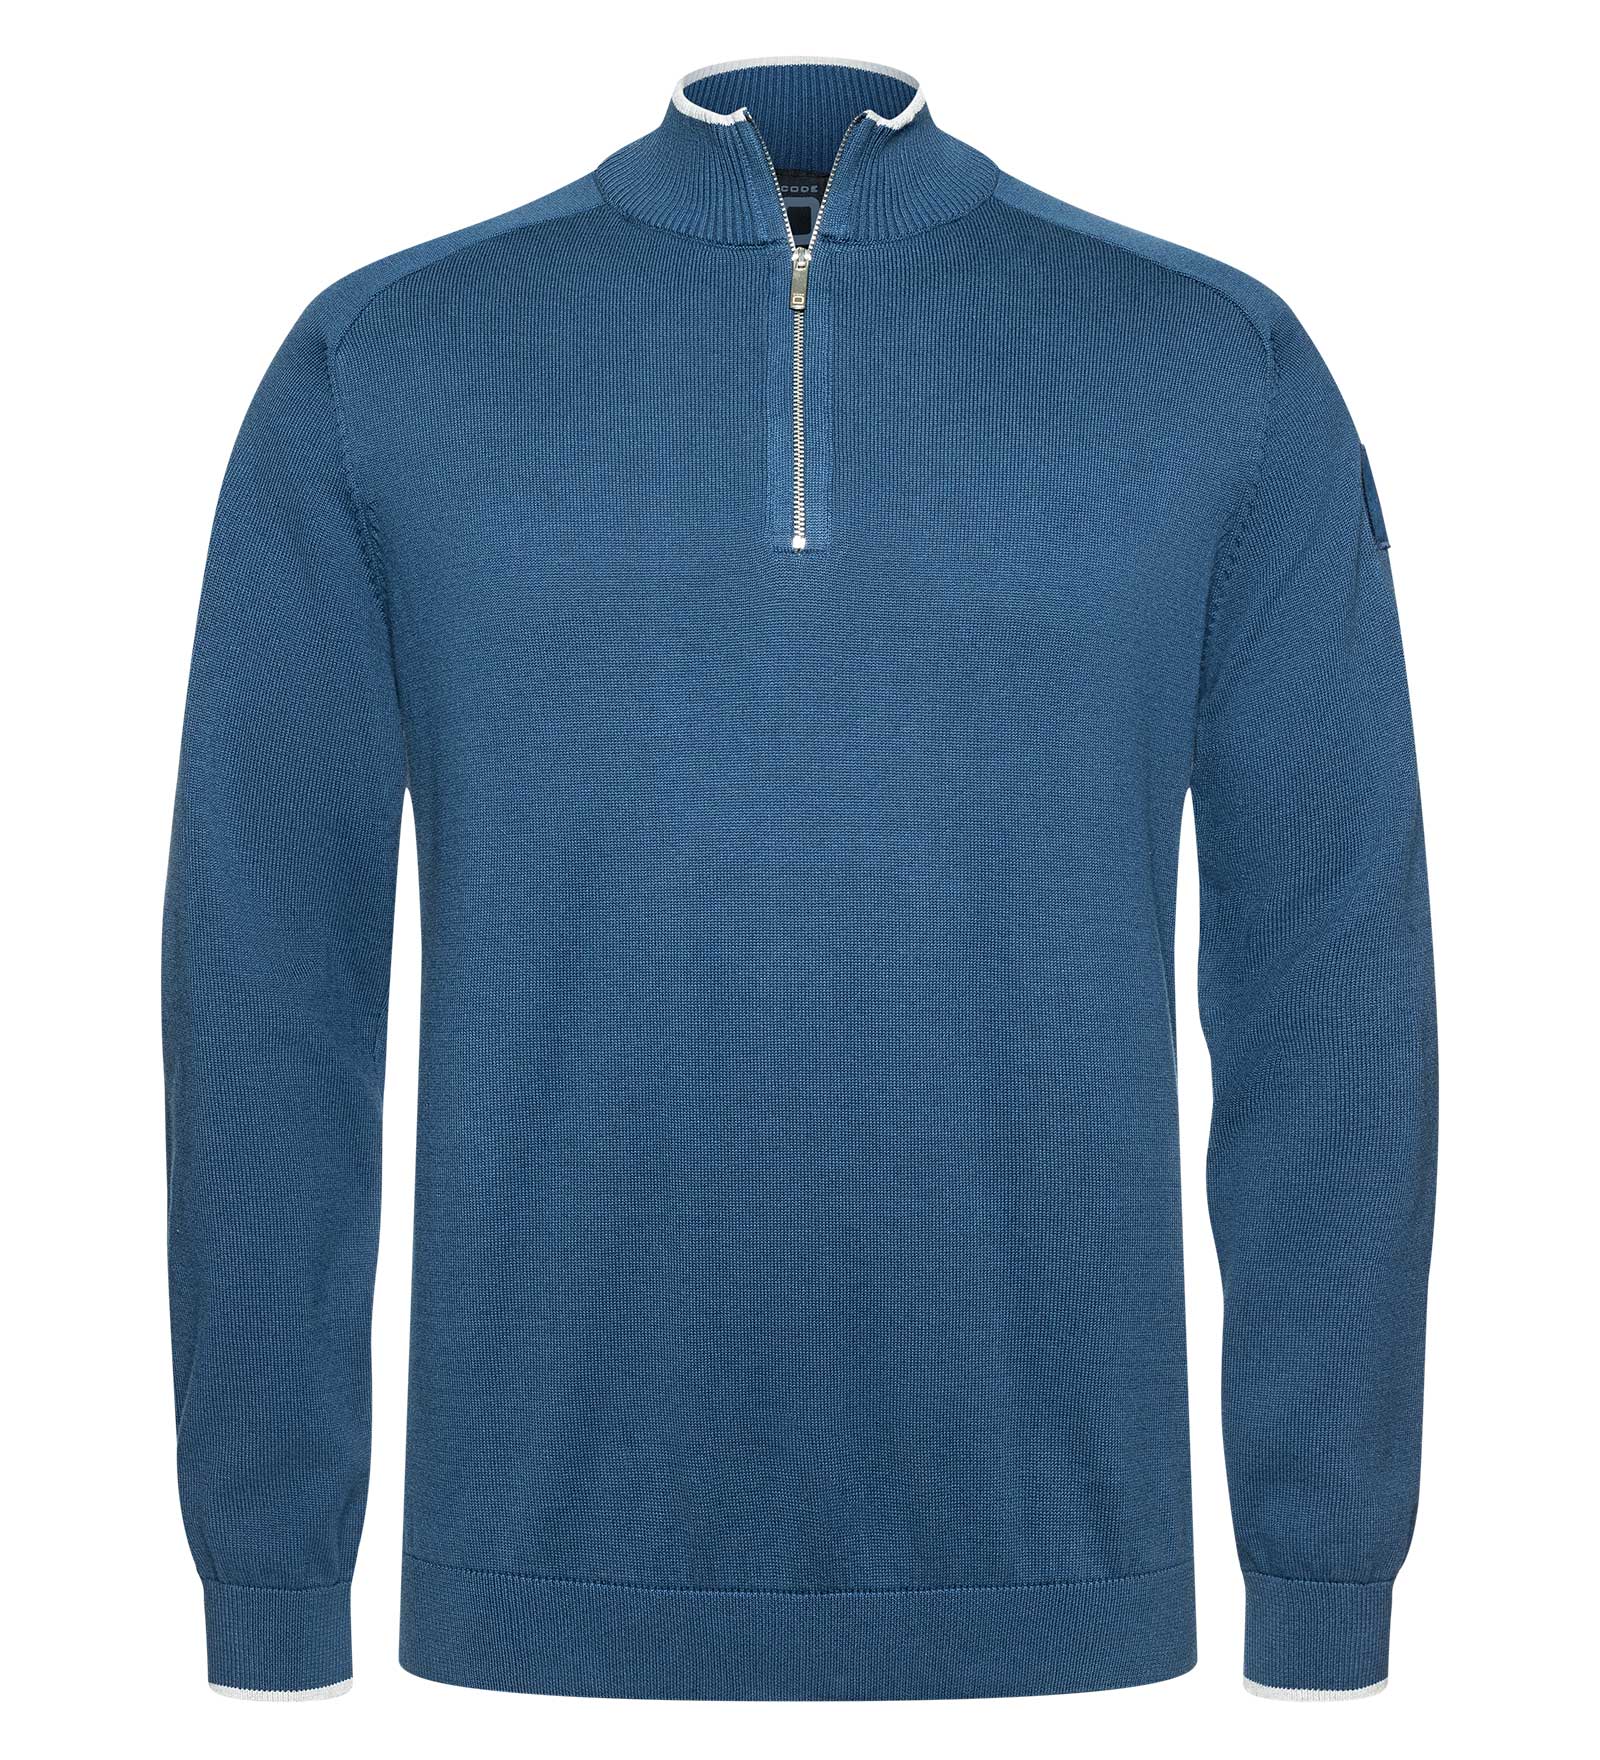 CODE-ZERO Half-Zip Sweater Men Rigging Navy Blue L | CODE-ZERO